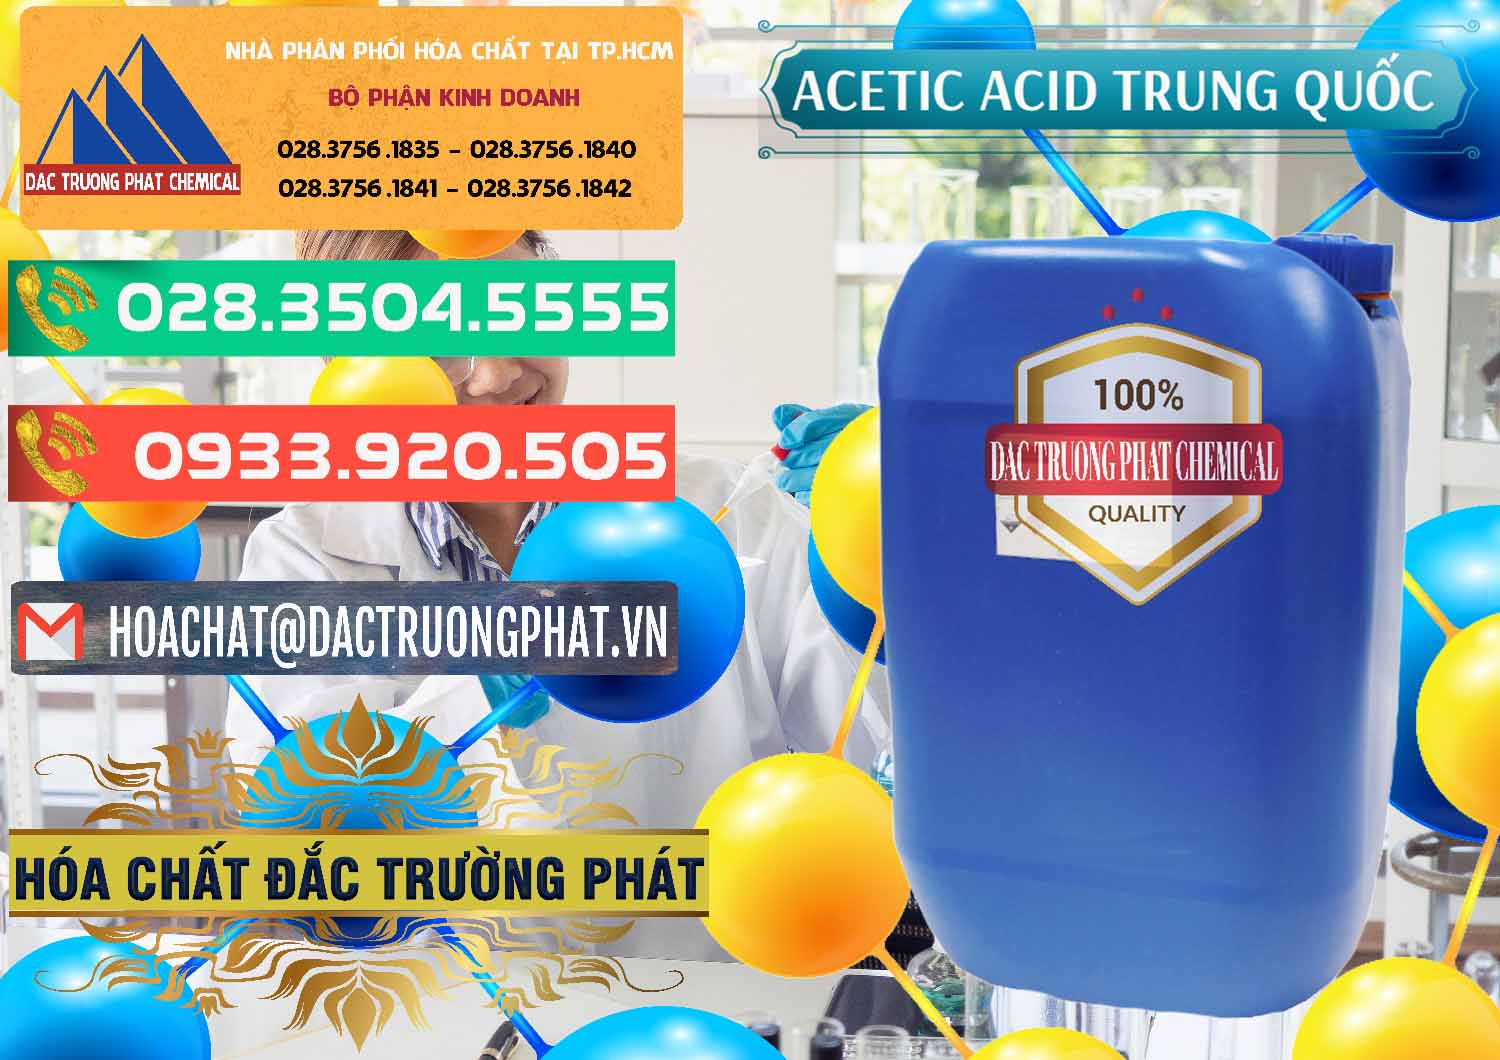 Cty bán ( cung cấp ) Acetic Acid – Axit Acetic Trung Quốc China - 0358 - Đơn vị chuyên nhập khẩu ( phân phối ) hóa chất tại TP.HCM - congtyhoachat.com.vn